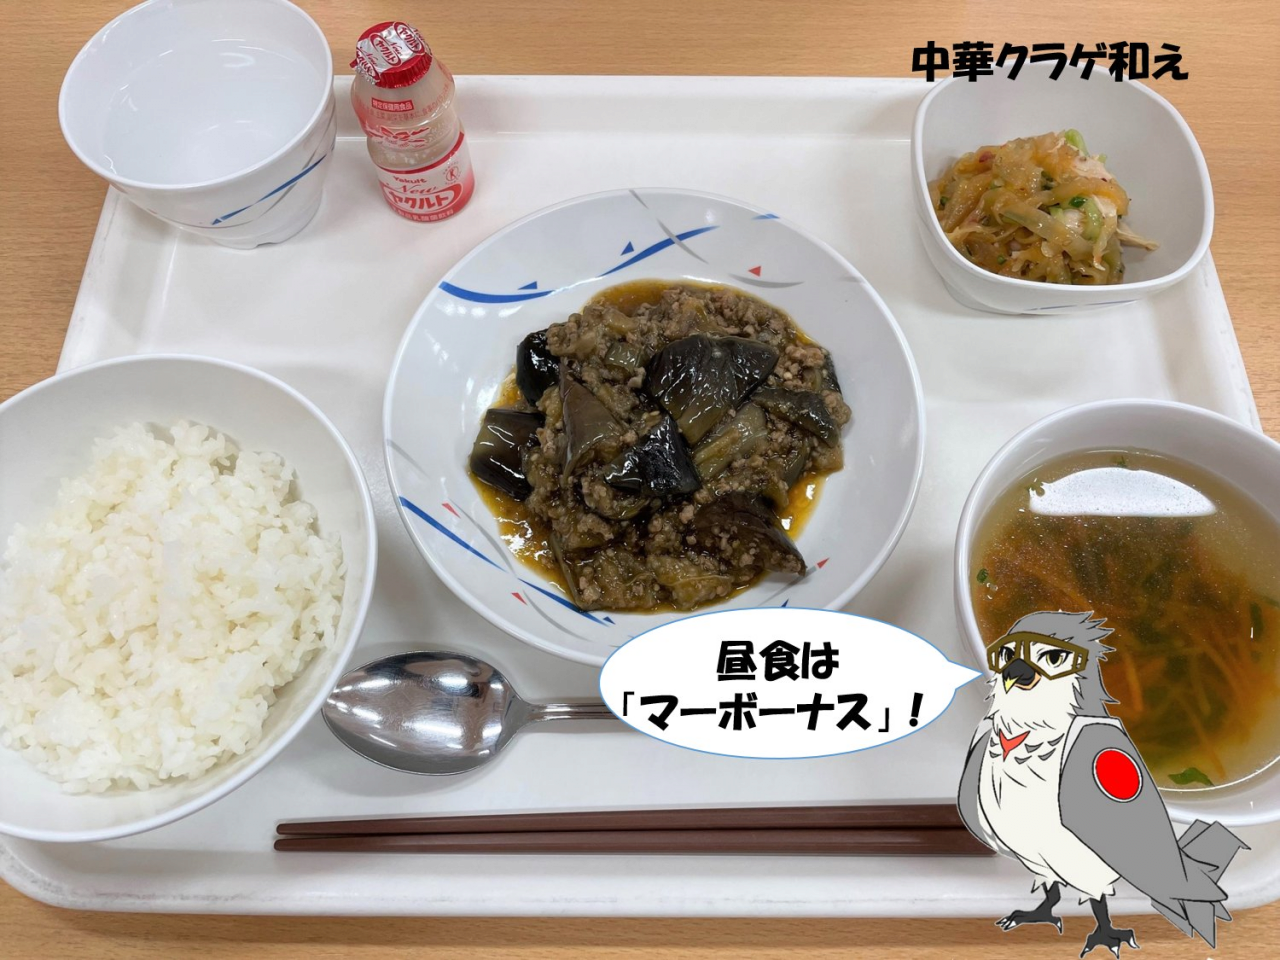 일본 자위대의 균형잡힌 식사